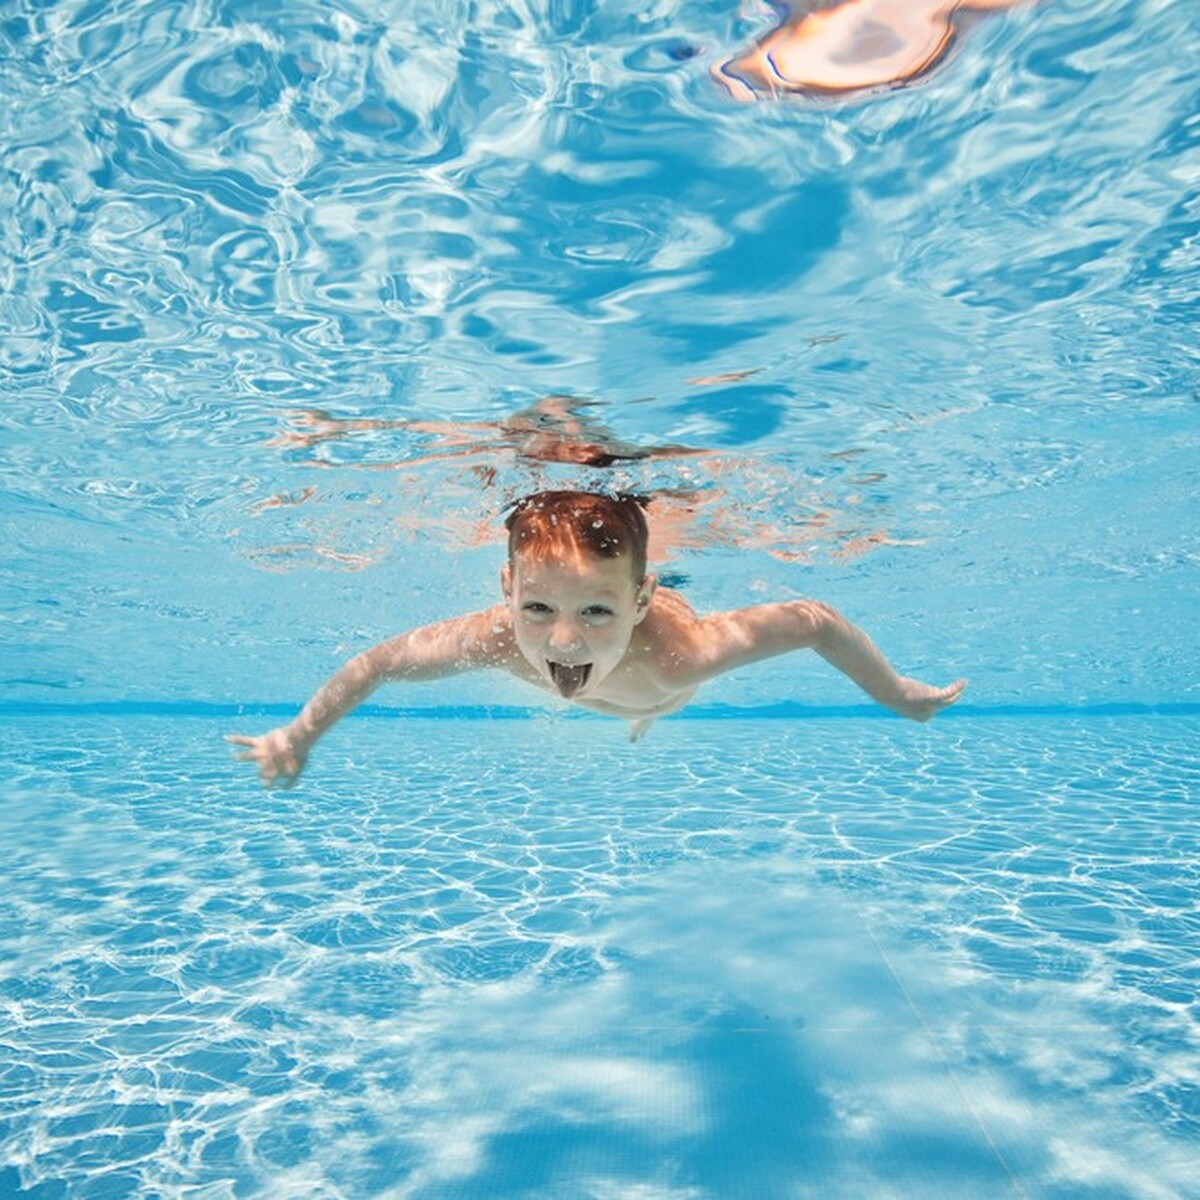 Olimpik Spor Yüzme Kulübü'nde Çocuk & Yetişkinler İçin 1 Seanslık Yüzme Eğitimi